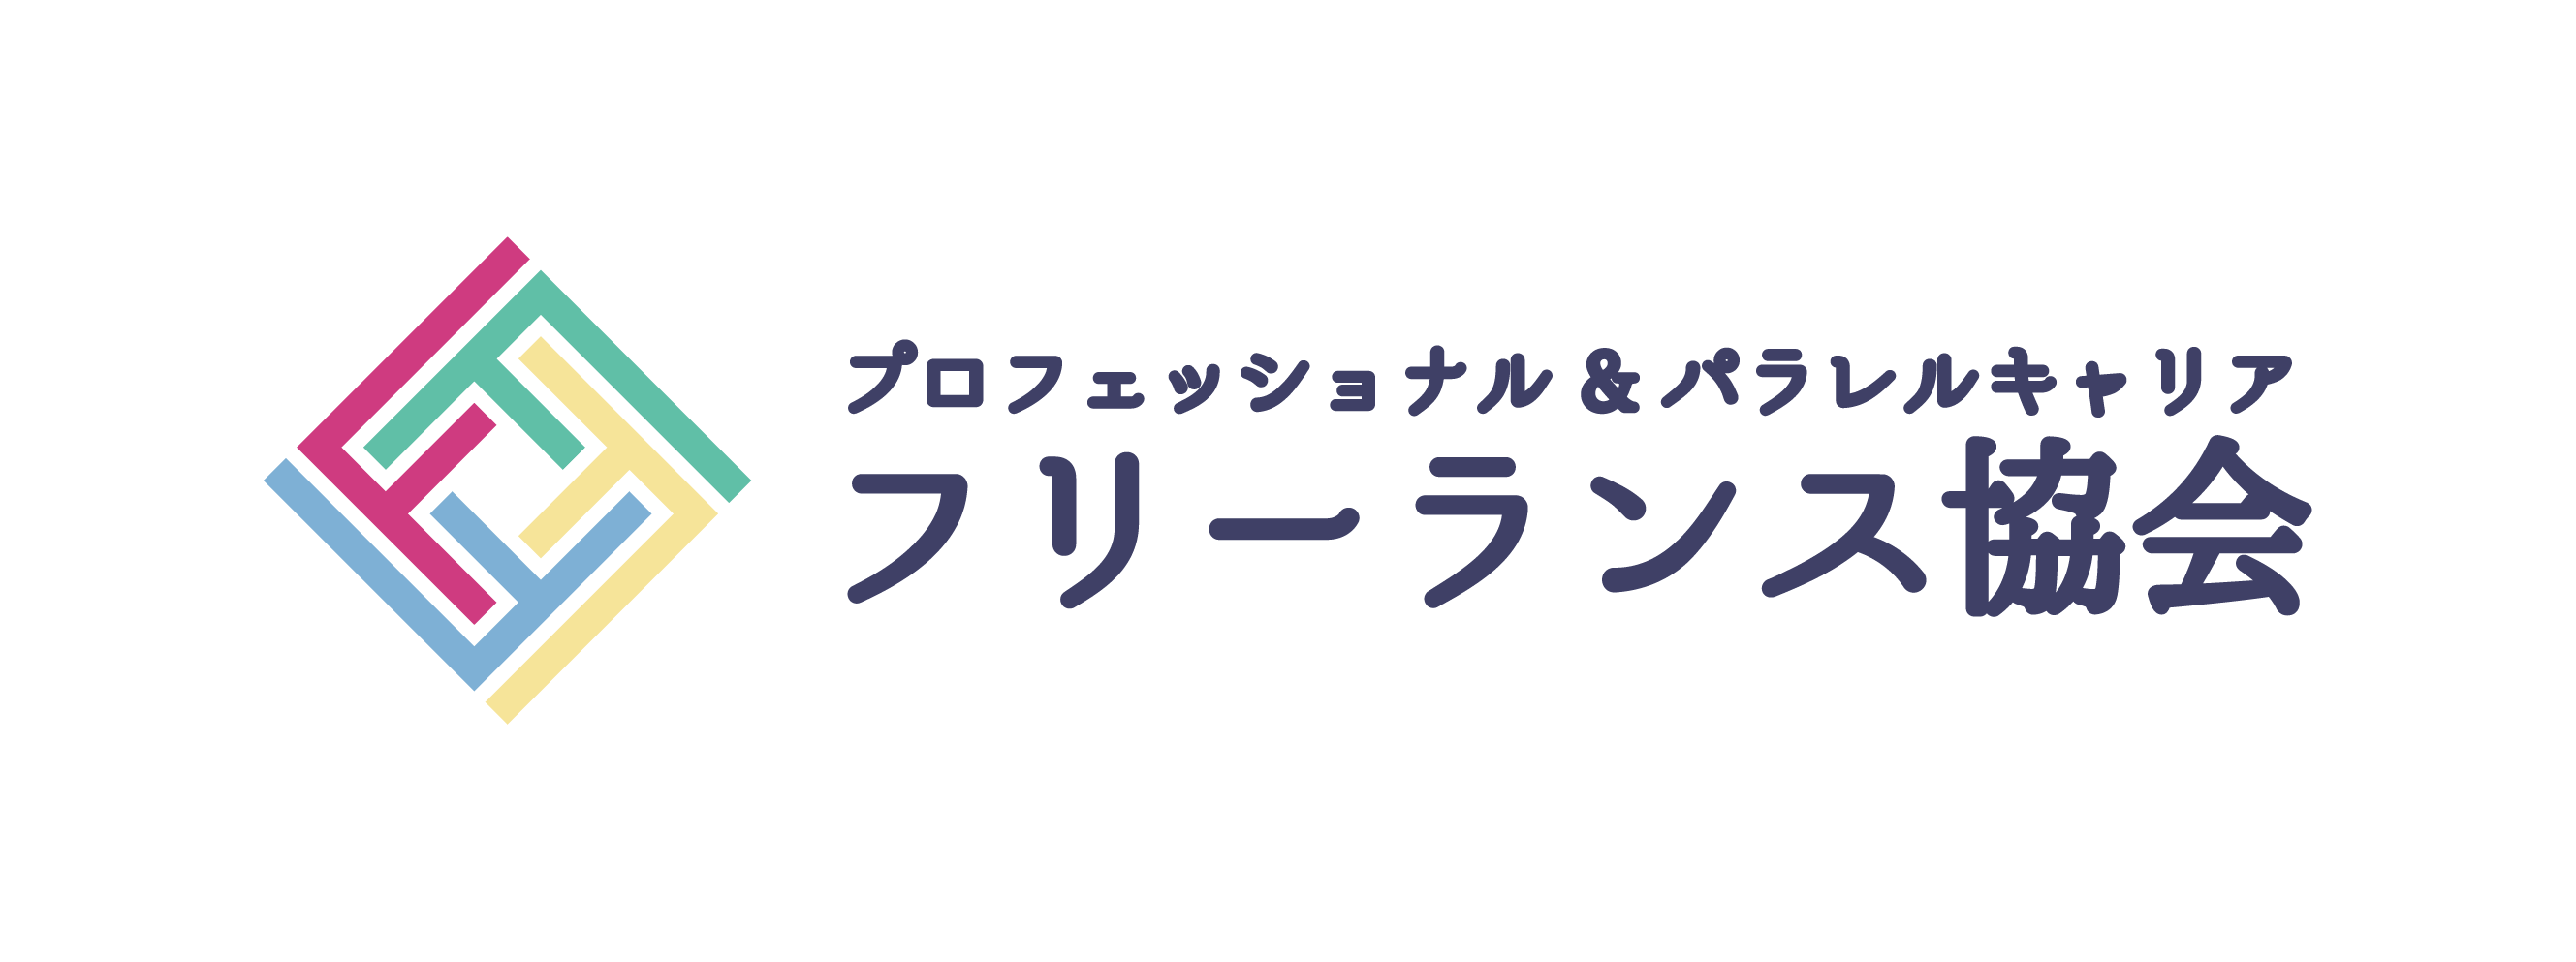 日本フリーランス協会のロゴ